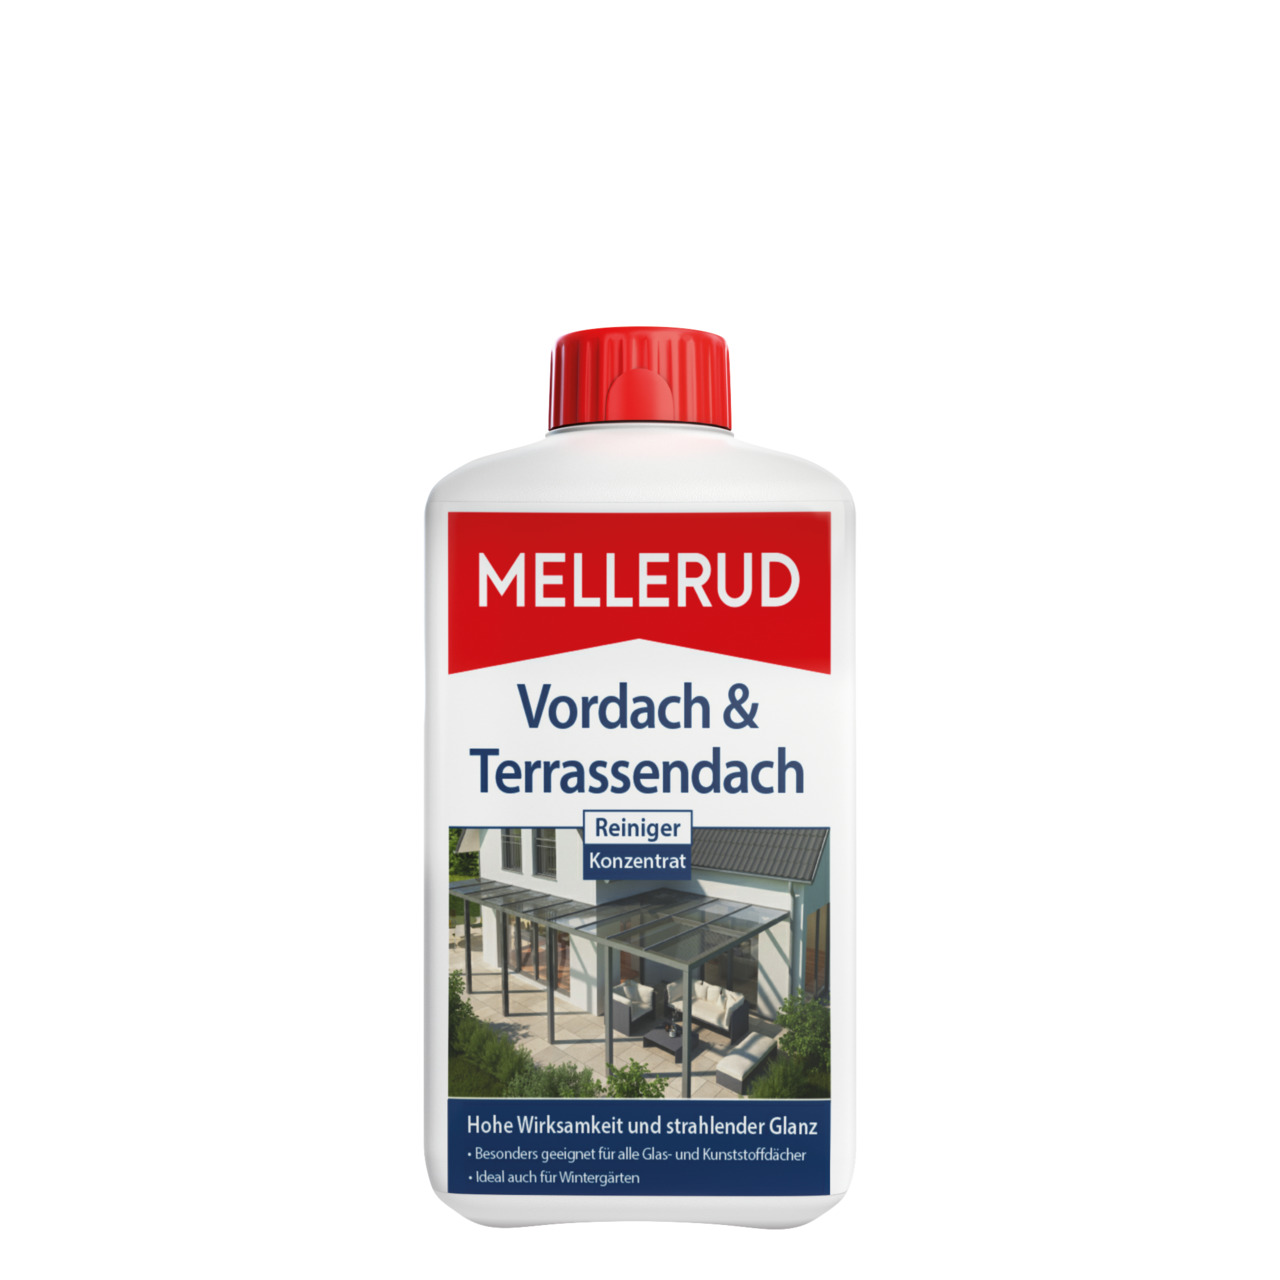 Vordach & Terrassendach Reiniger Konzentrat 1,0 l